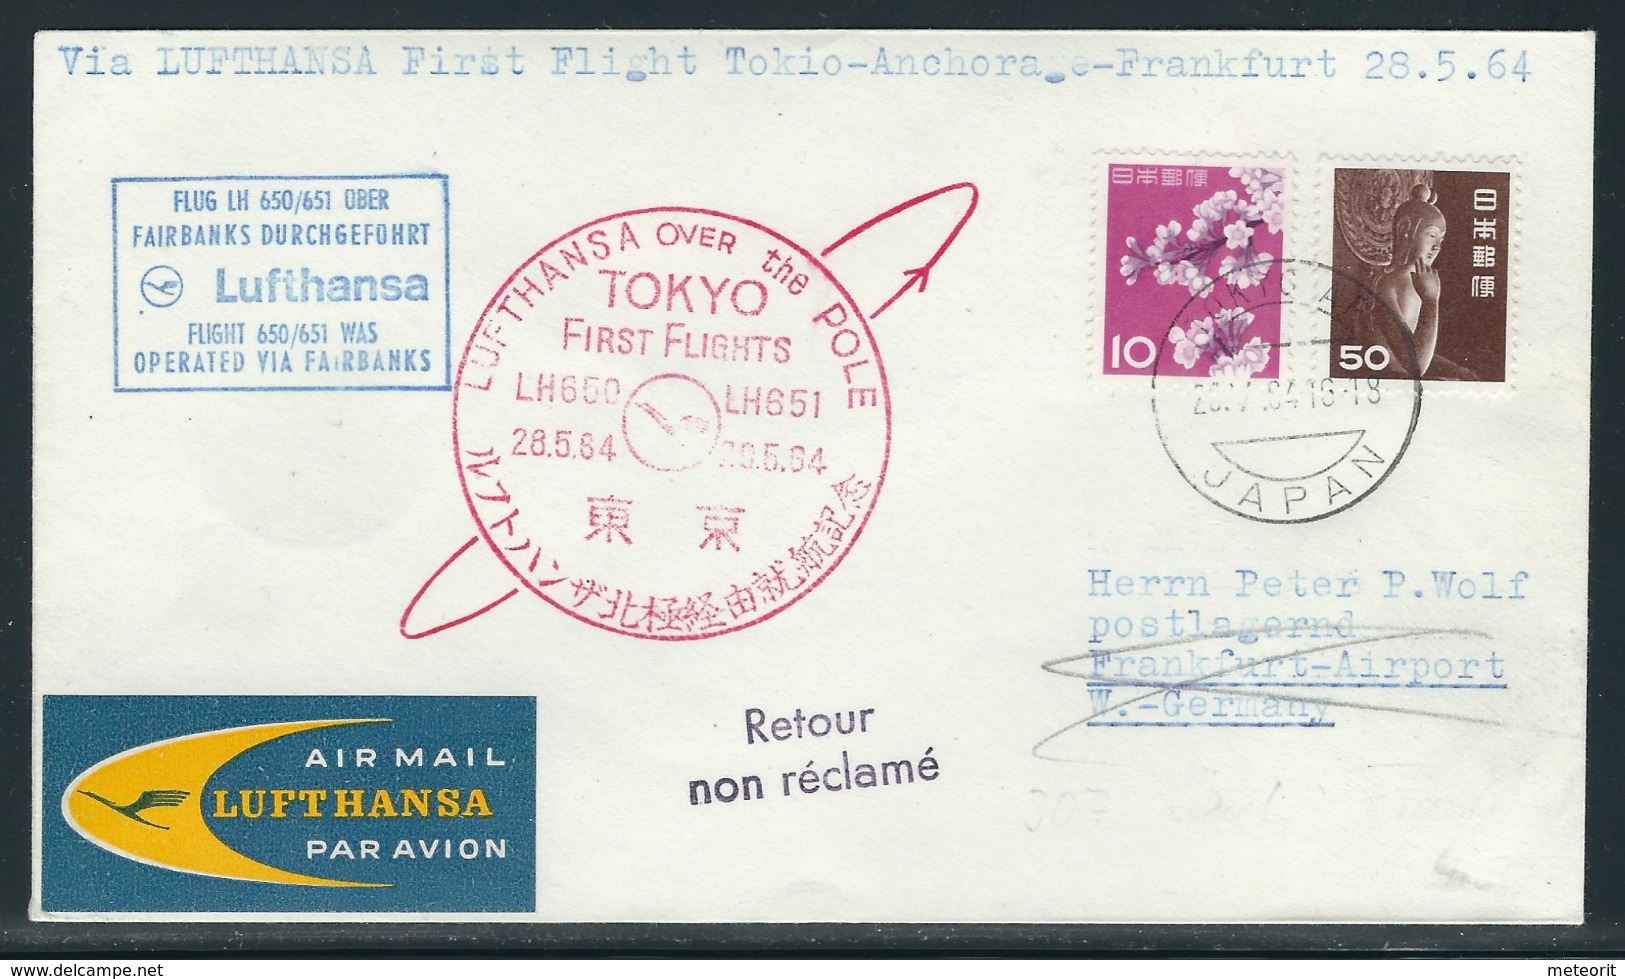 Lufthansa First Flight Tokio-Anchorage-Frankfurt 28.5.64 - Airmail